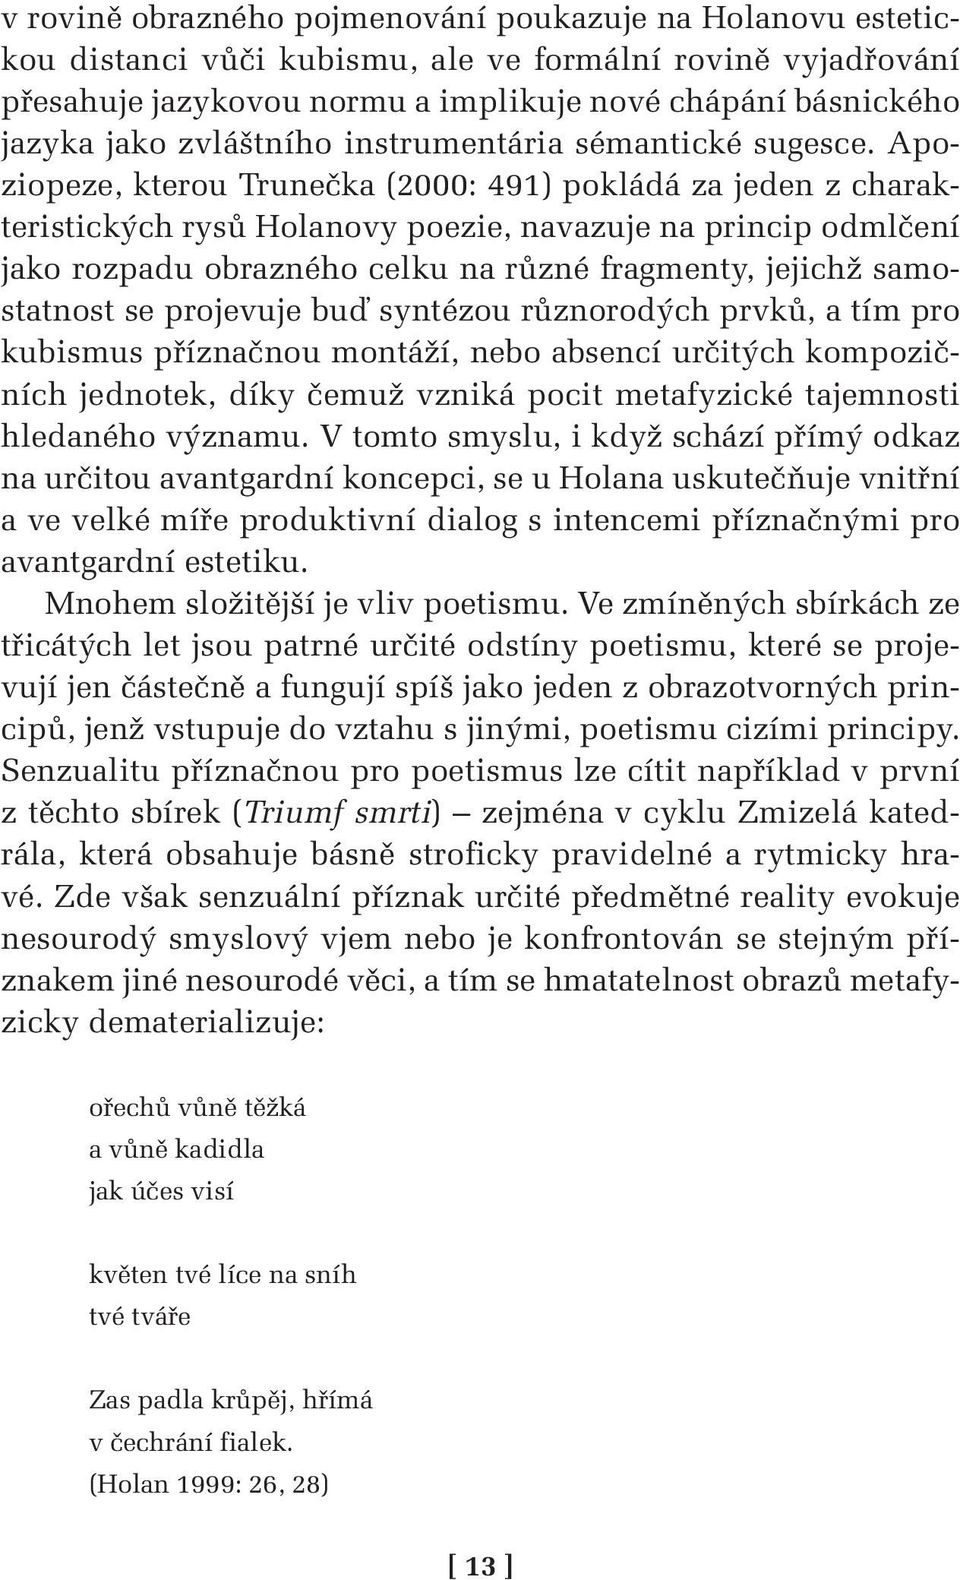 Apoziopeze, kterou Trunečka (2000: 491) pokládá za jeden z charakteristických rysů Holanovy poezie, navazuje na princip odmlčení jako rozpadu obrazného celku na různé fragmenty, jejichž samostatnost